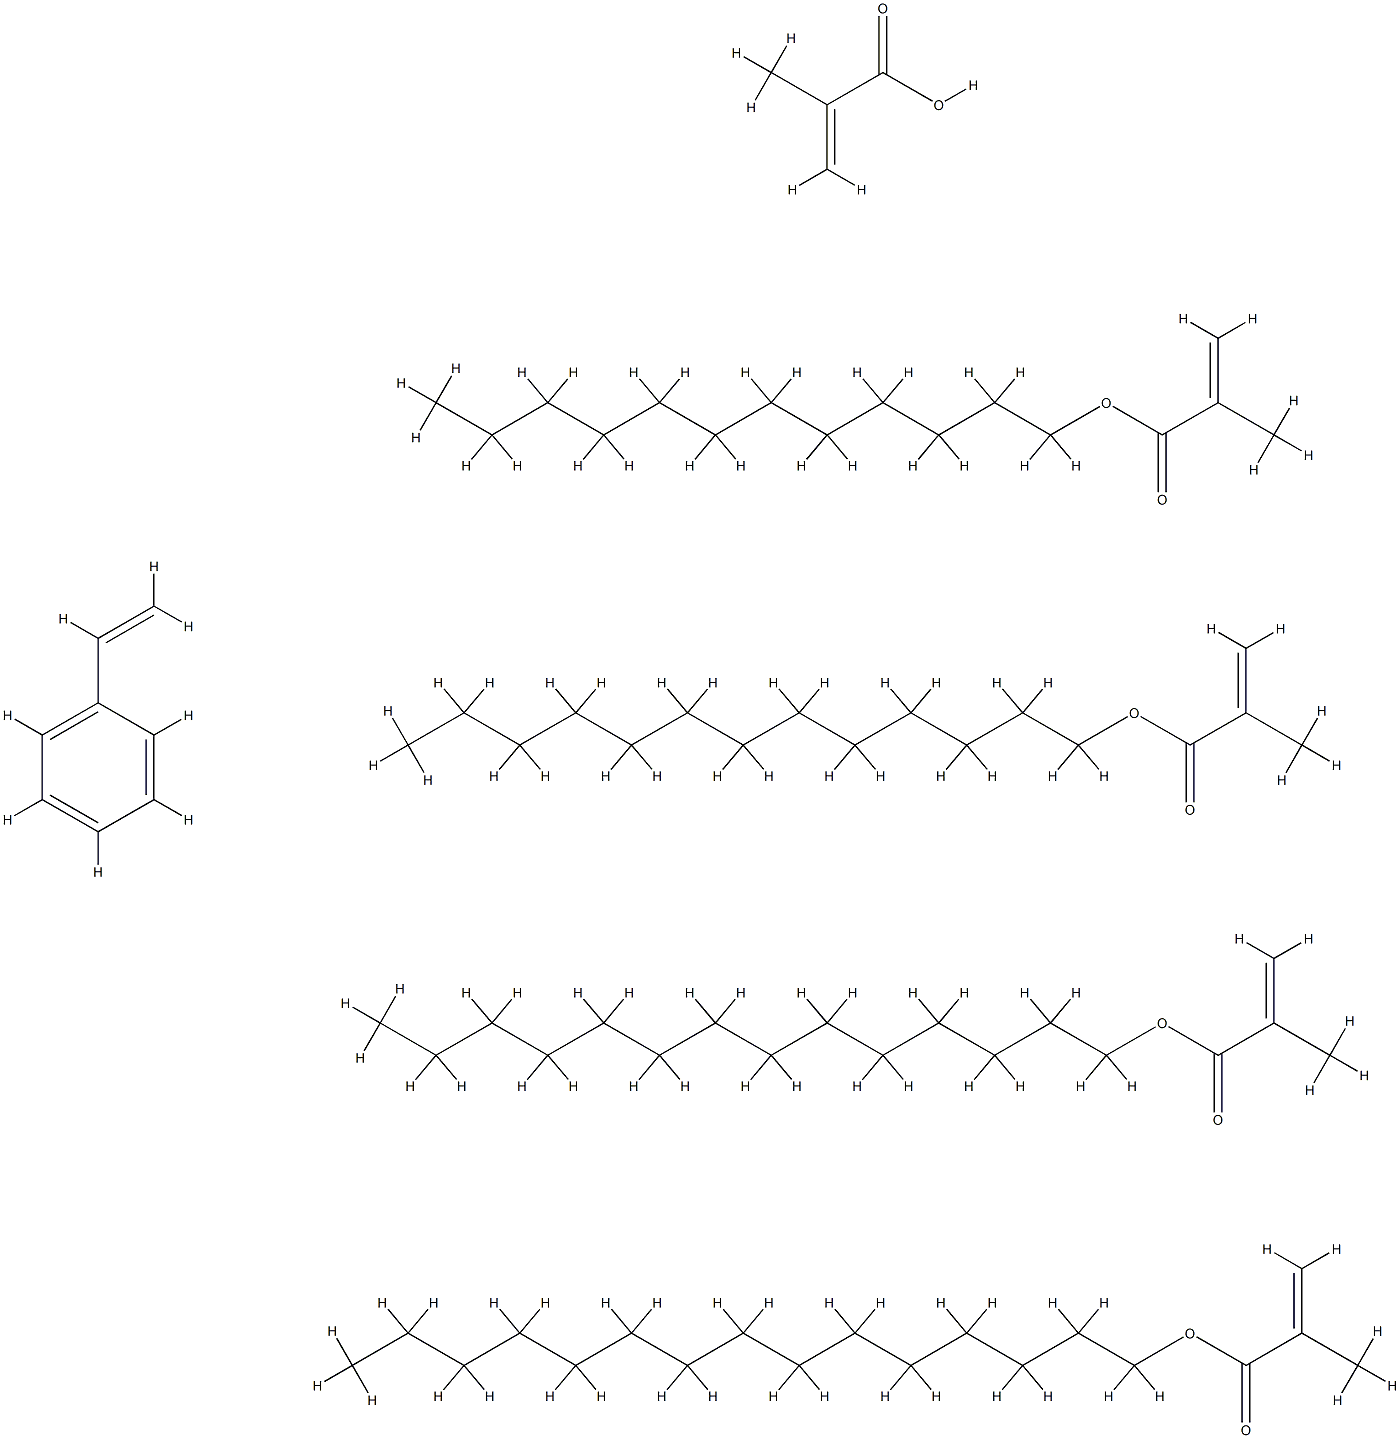 2-Propenoic acid, 2-methyl-, polymer with dodecyl 2-methyl-2-propenoate, ethenylbenzene, pentadecyl 2-methyl-2-propenoate, tetradecyl 2-methyl-2-propenoate and tridecyl 2-methyl-2-propenoate Struktur